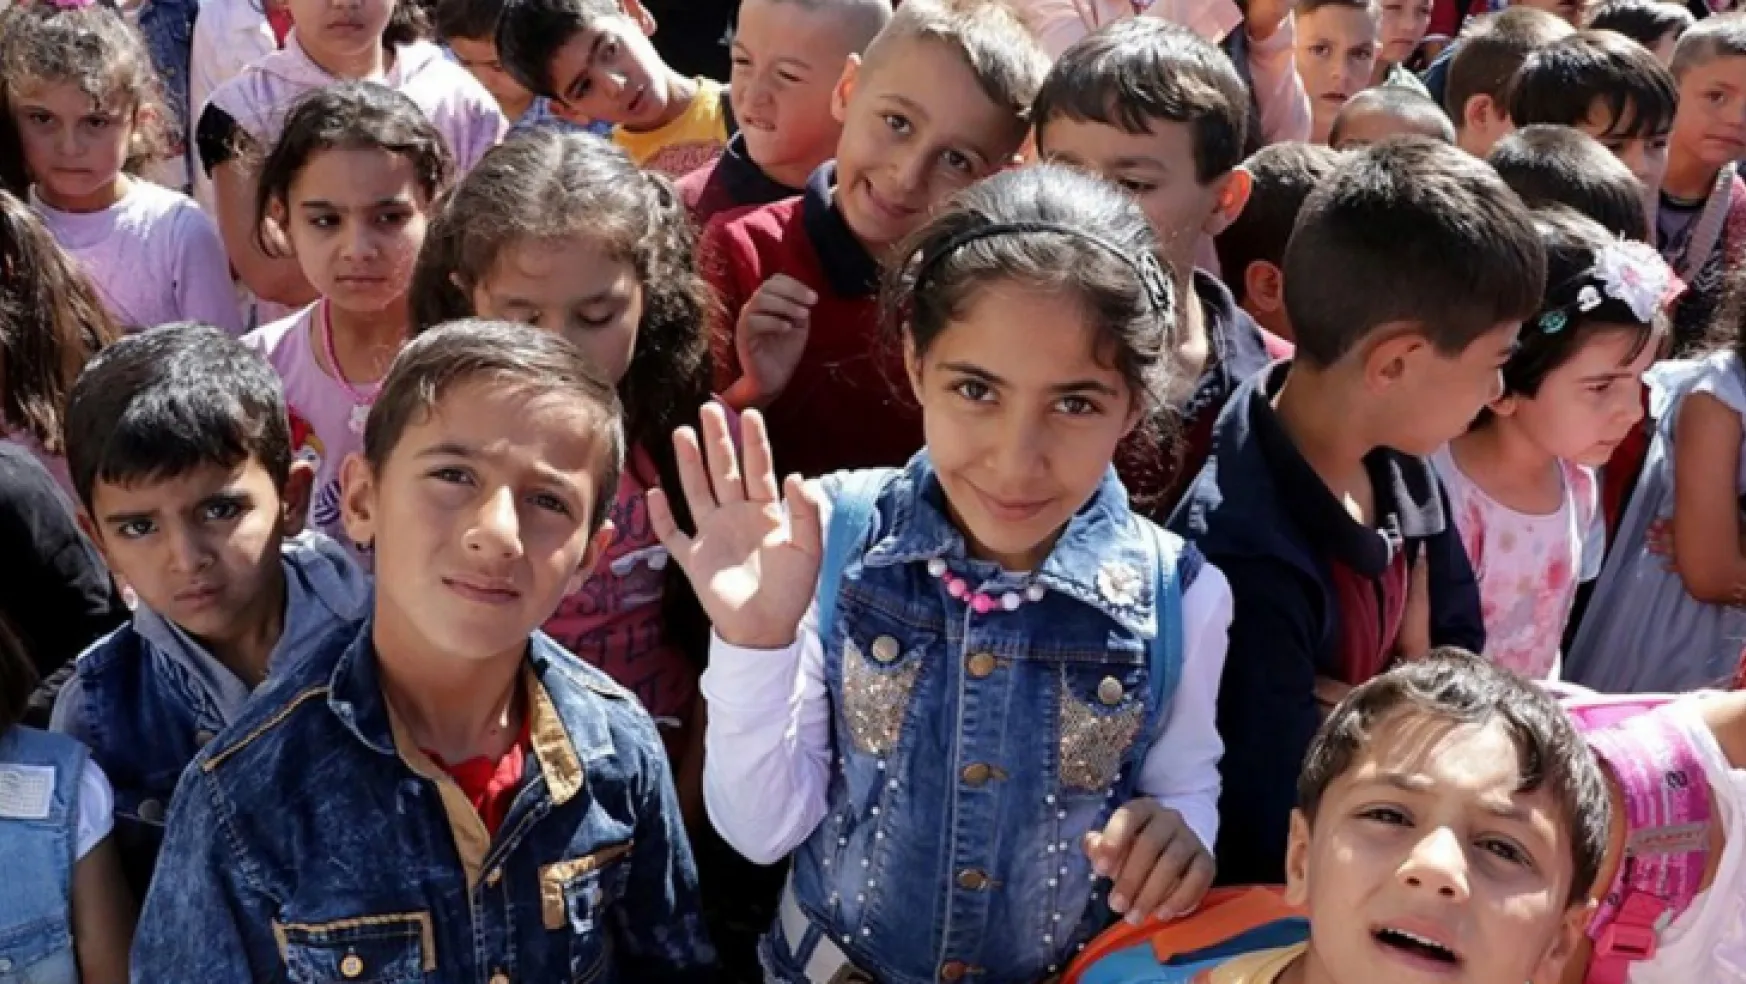 Türkiye nüfusunun yüzde 26,5'i çocuk